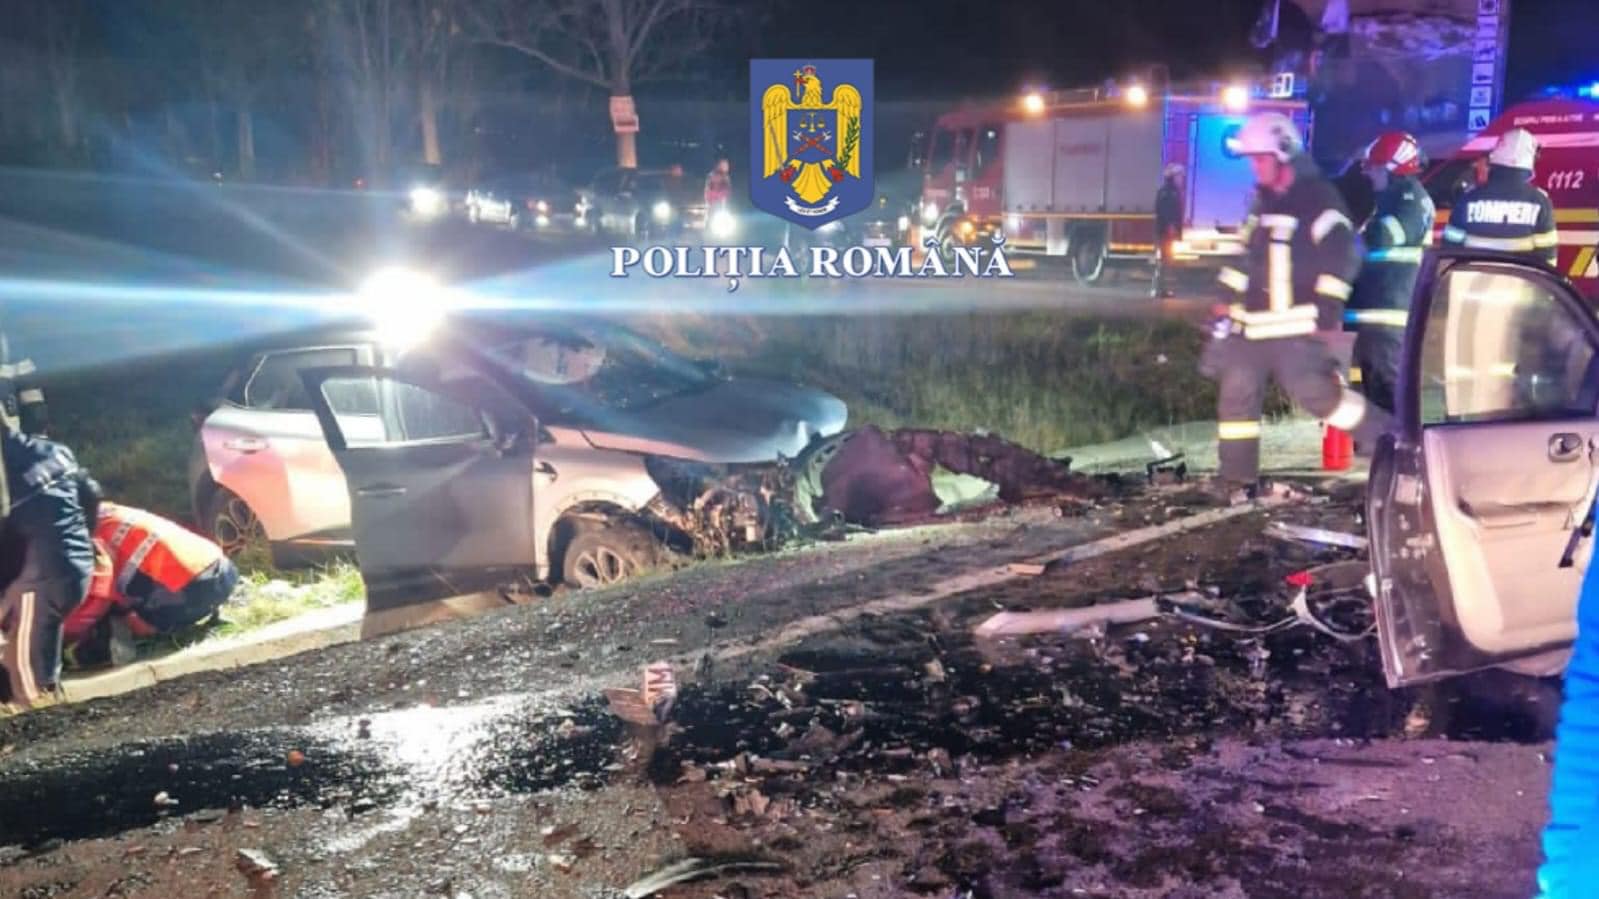 (Foto) Accident Brașov. Gravidă readusă la viață de medici pe marginea drumului. Două mașini s-au ciocnit violent între Bran şi Râşnov 3